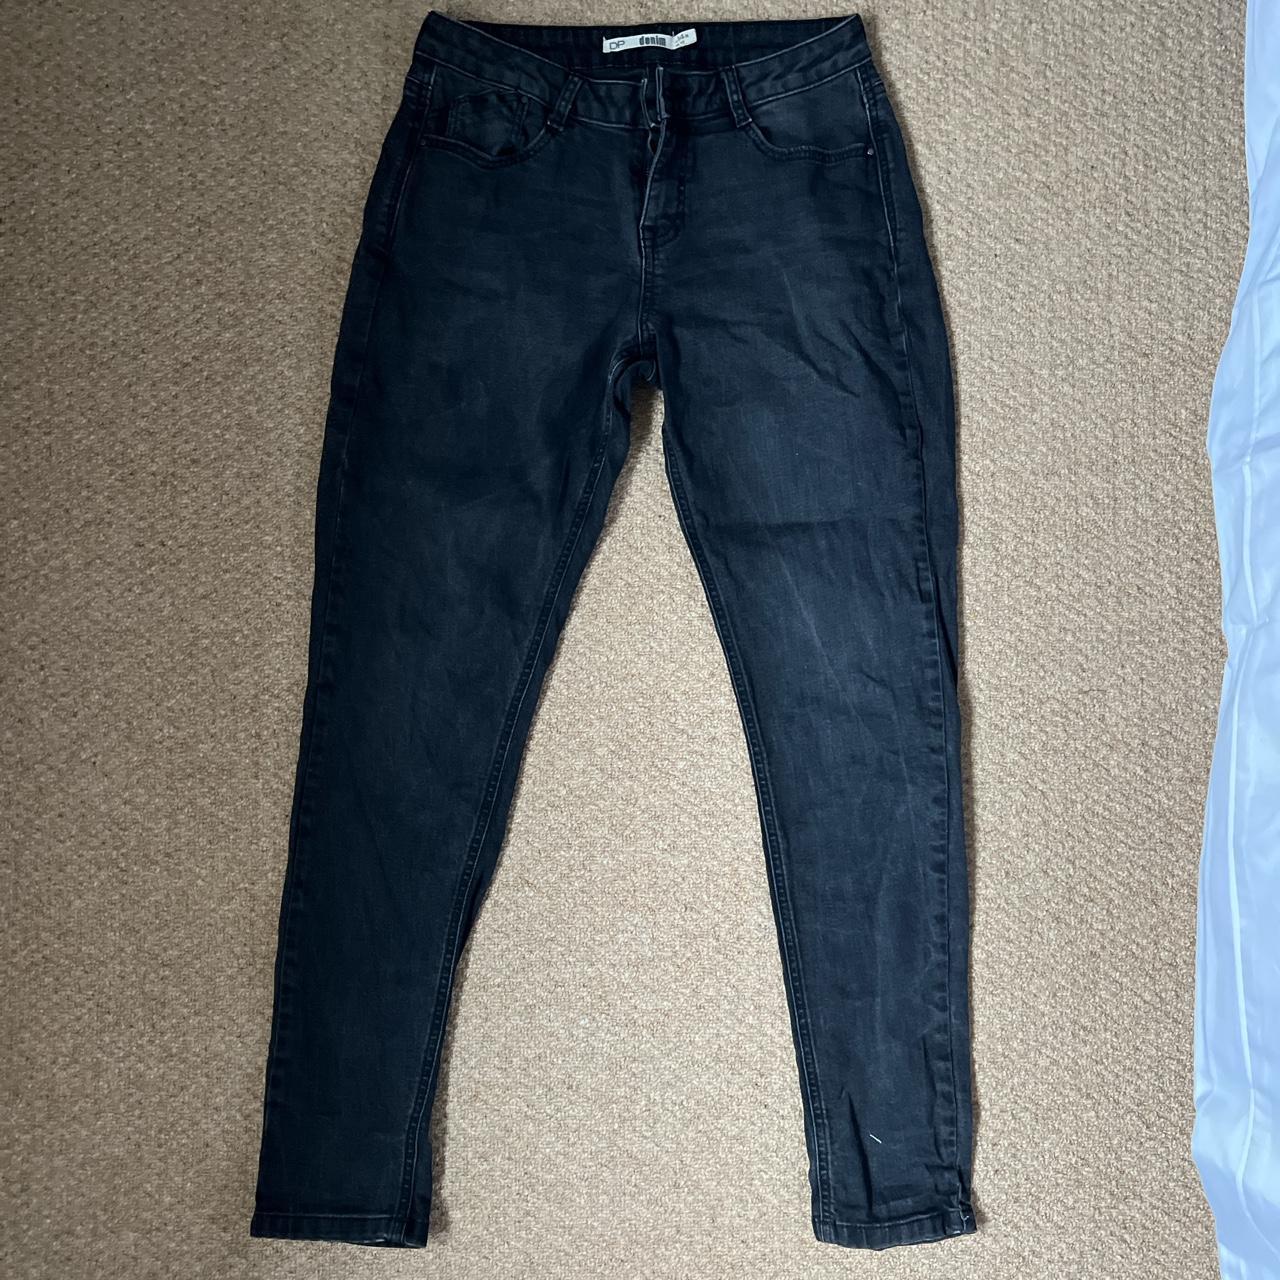 Black wash denim jeans Size Uk 14 - Depop